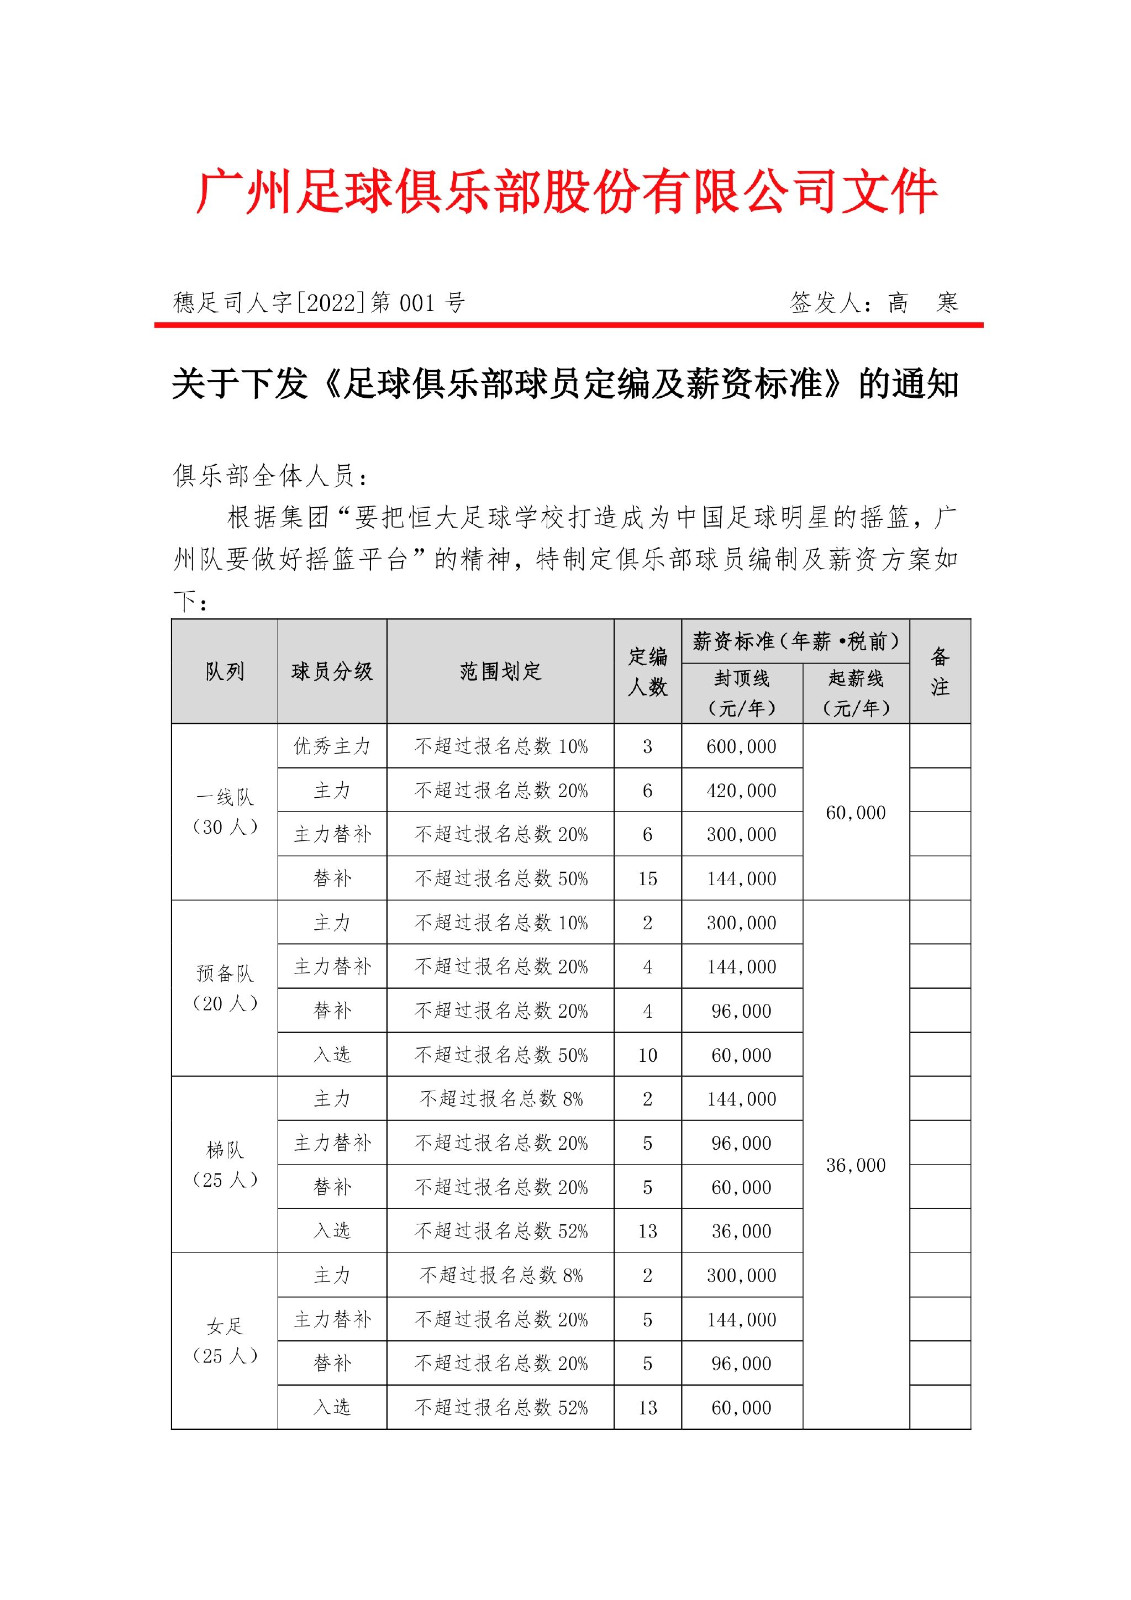 廣州足球俱樂部發布薪資標準.jpg